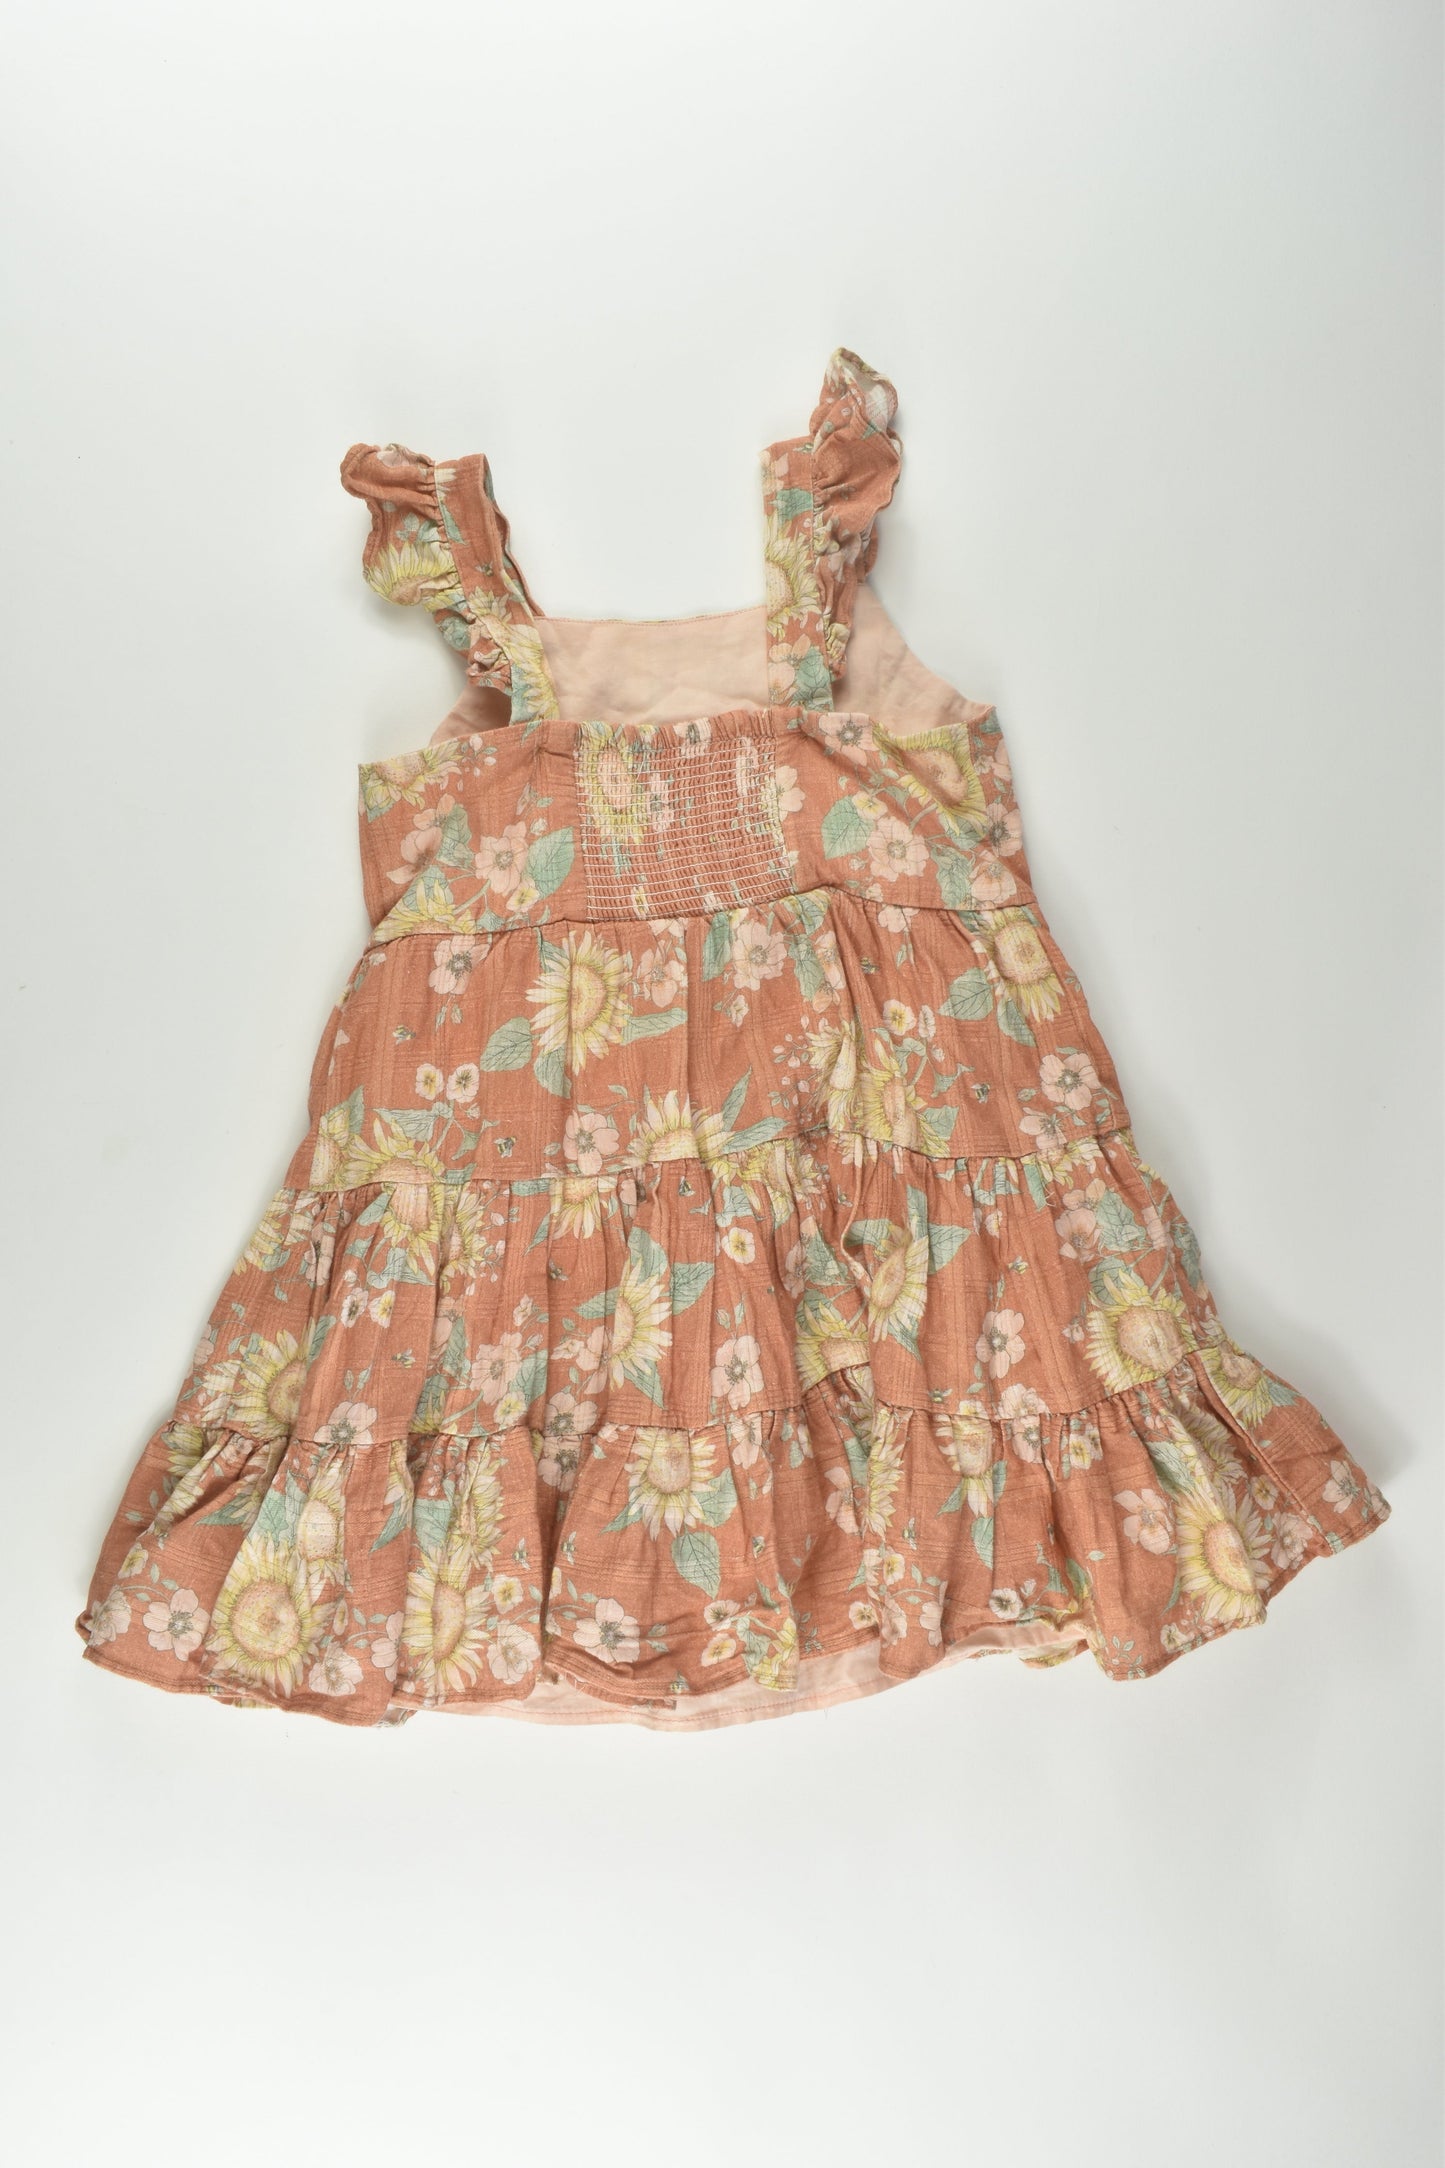 Bébé by Minihaha Size 3 Lined Floral Dress